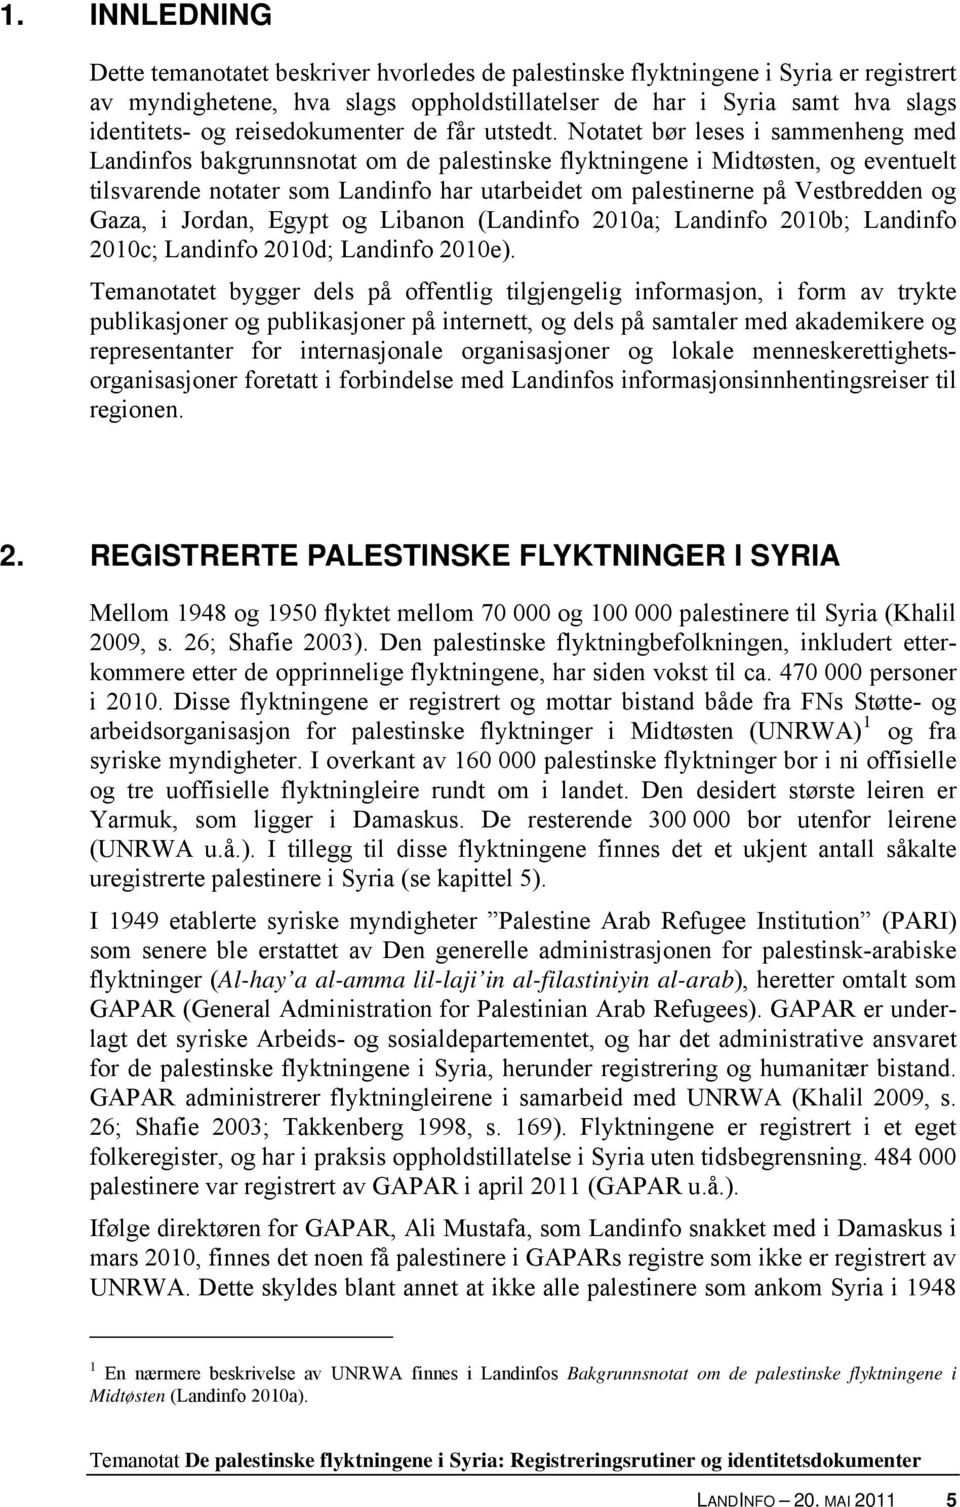 Notatet bør leses i sammenheng med Landinfos bakgrunnsnotat om de palestinske flyktningene i Midtøsten, og eventuelt tilsvarende notater som Landinfo har utarbeidet om palestinerne på Vestbredden og